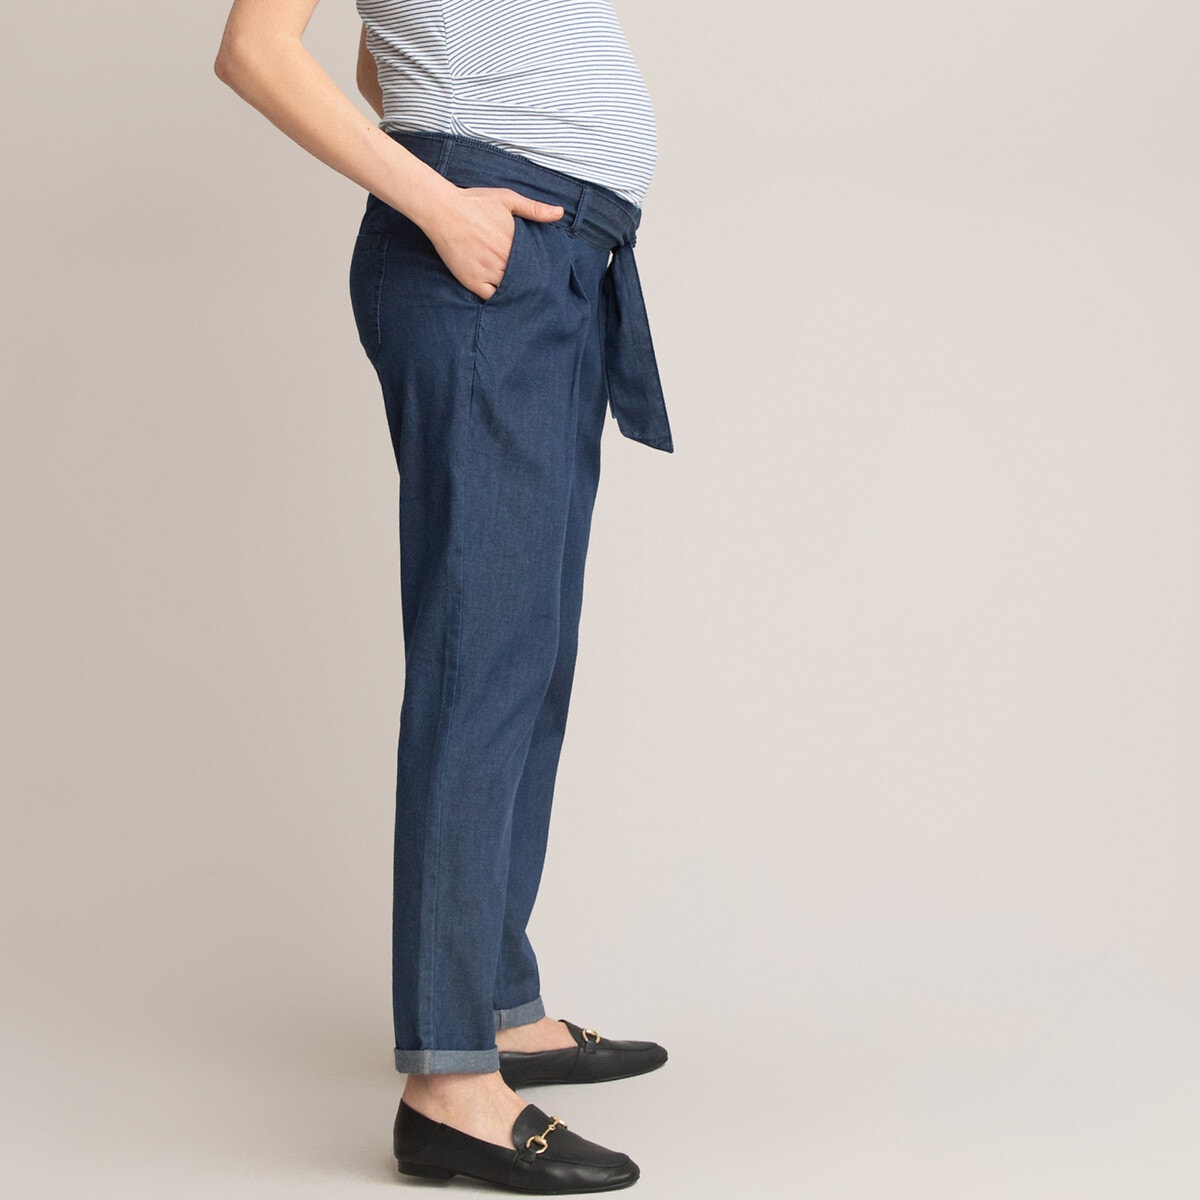 ΓΥΝΑΙΚΑ | Ρούχα Εγκυμοσύνης | Παντελόνια Παντελόνι εγκυμοσύνης από ελαφρύ ντένιμ